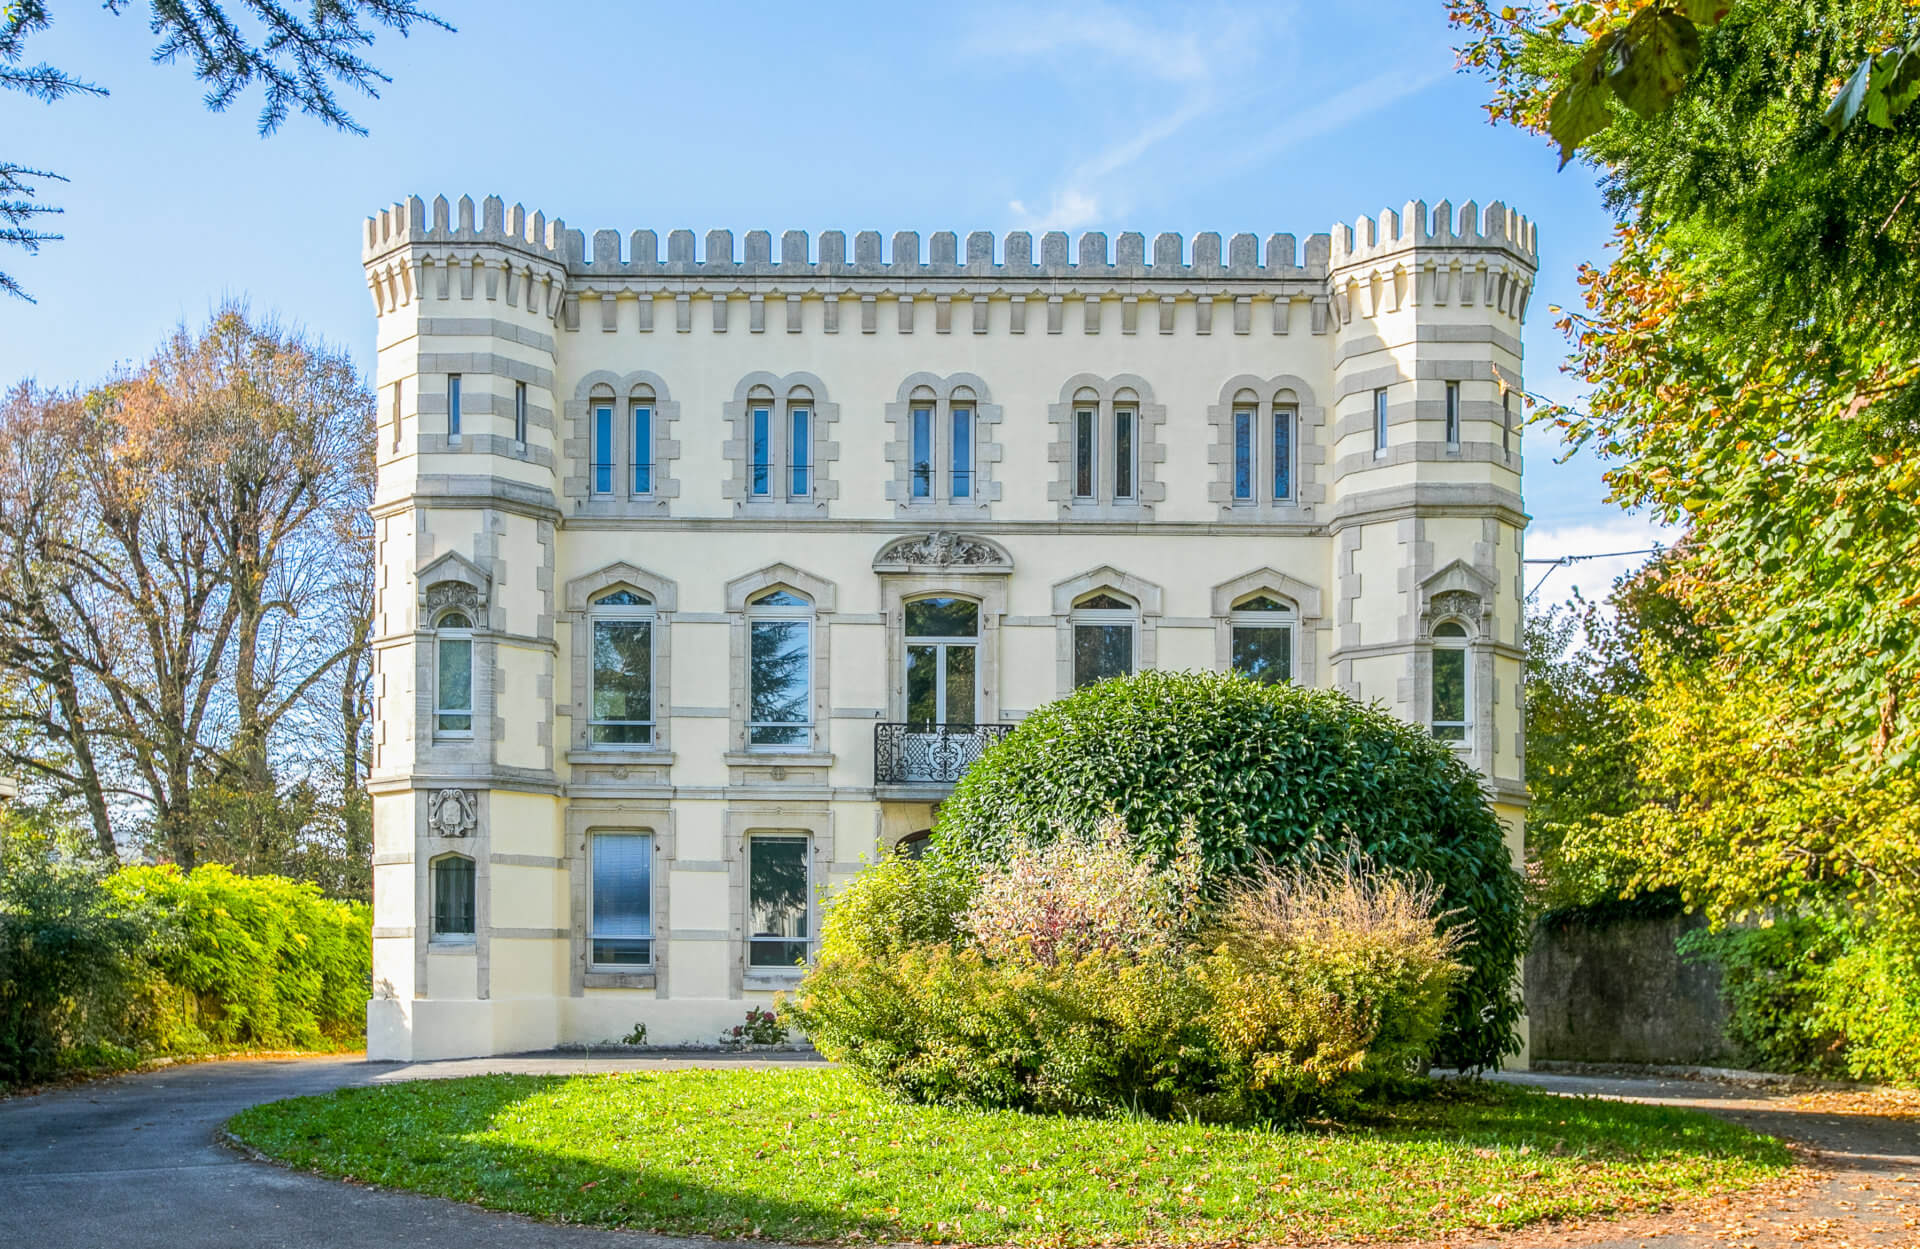 Château à vendre DOLE JURA - Agence immobilière Arrière-Cour, spécialiste en immobilier de prestige et de caractère en Franche-Comté